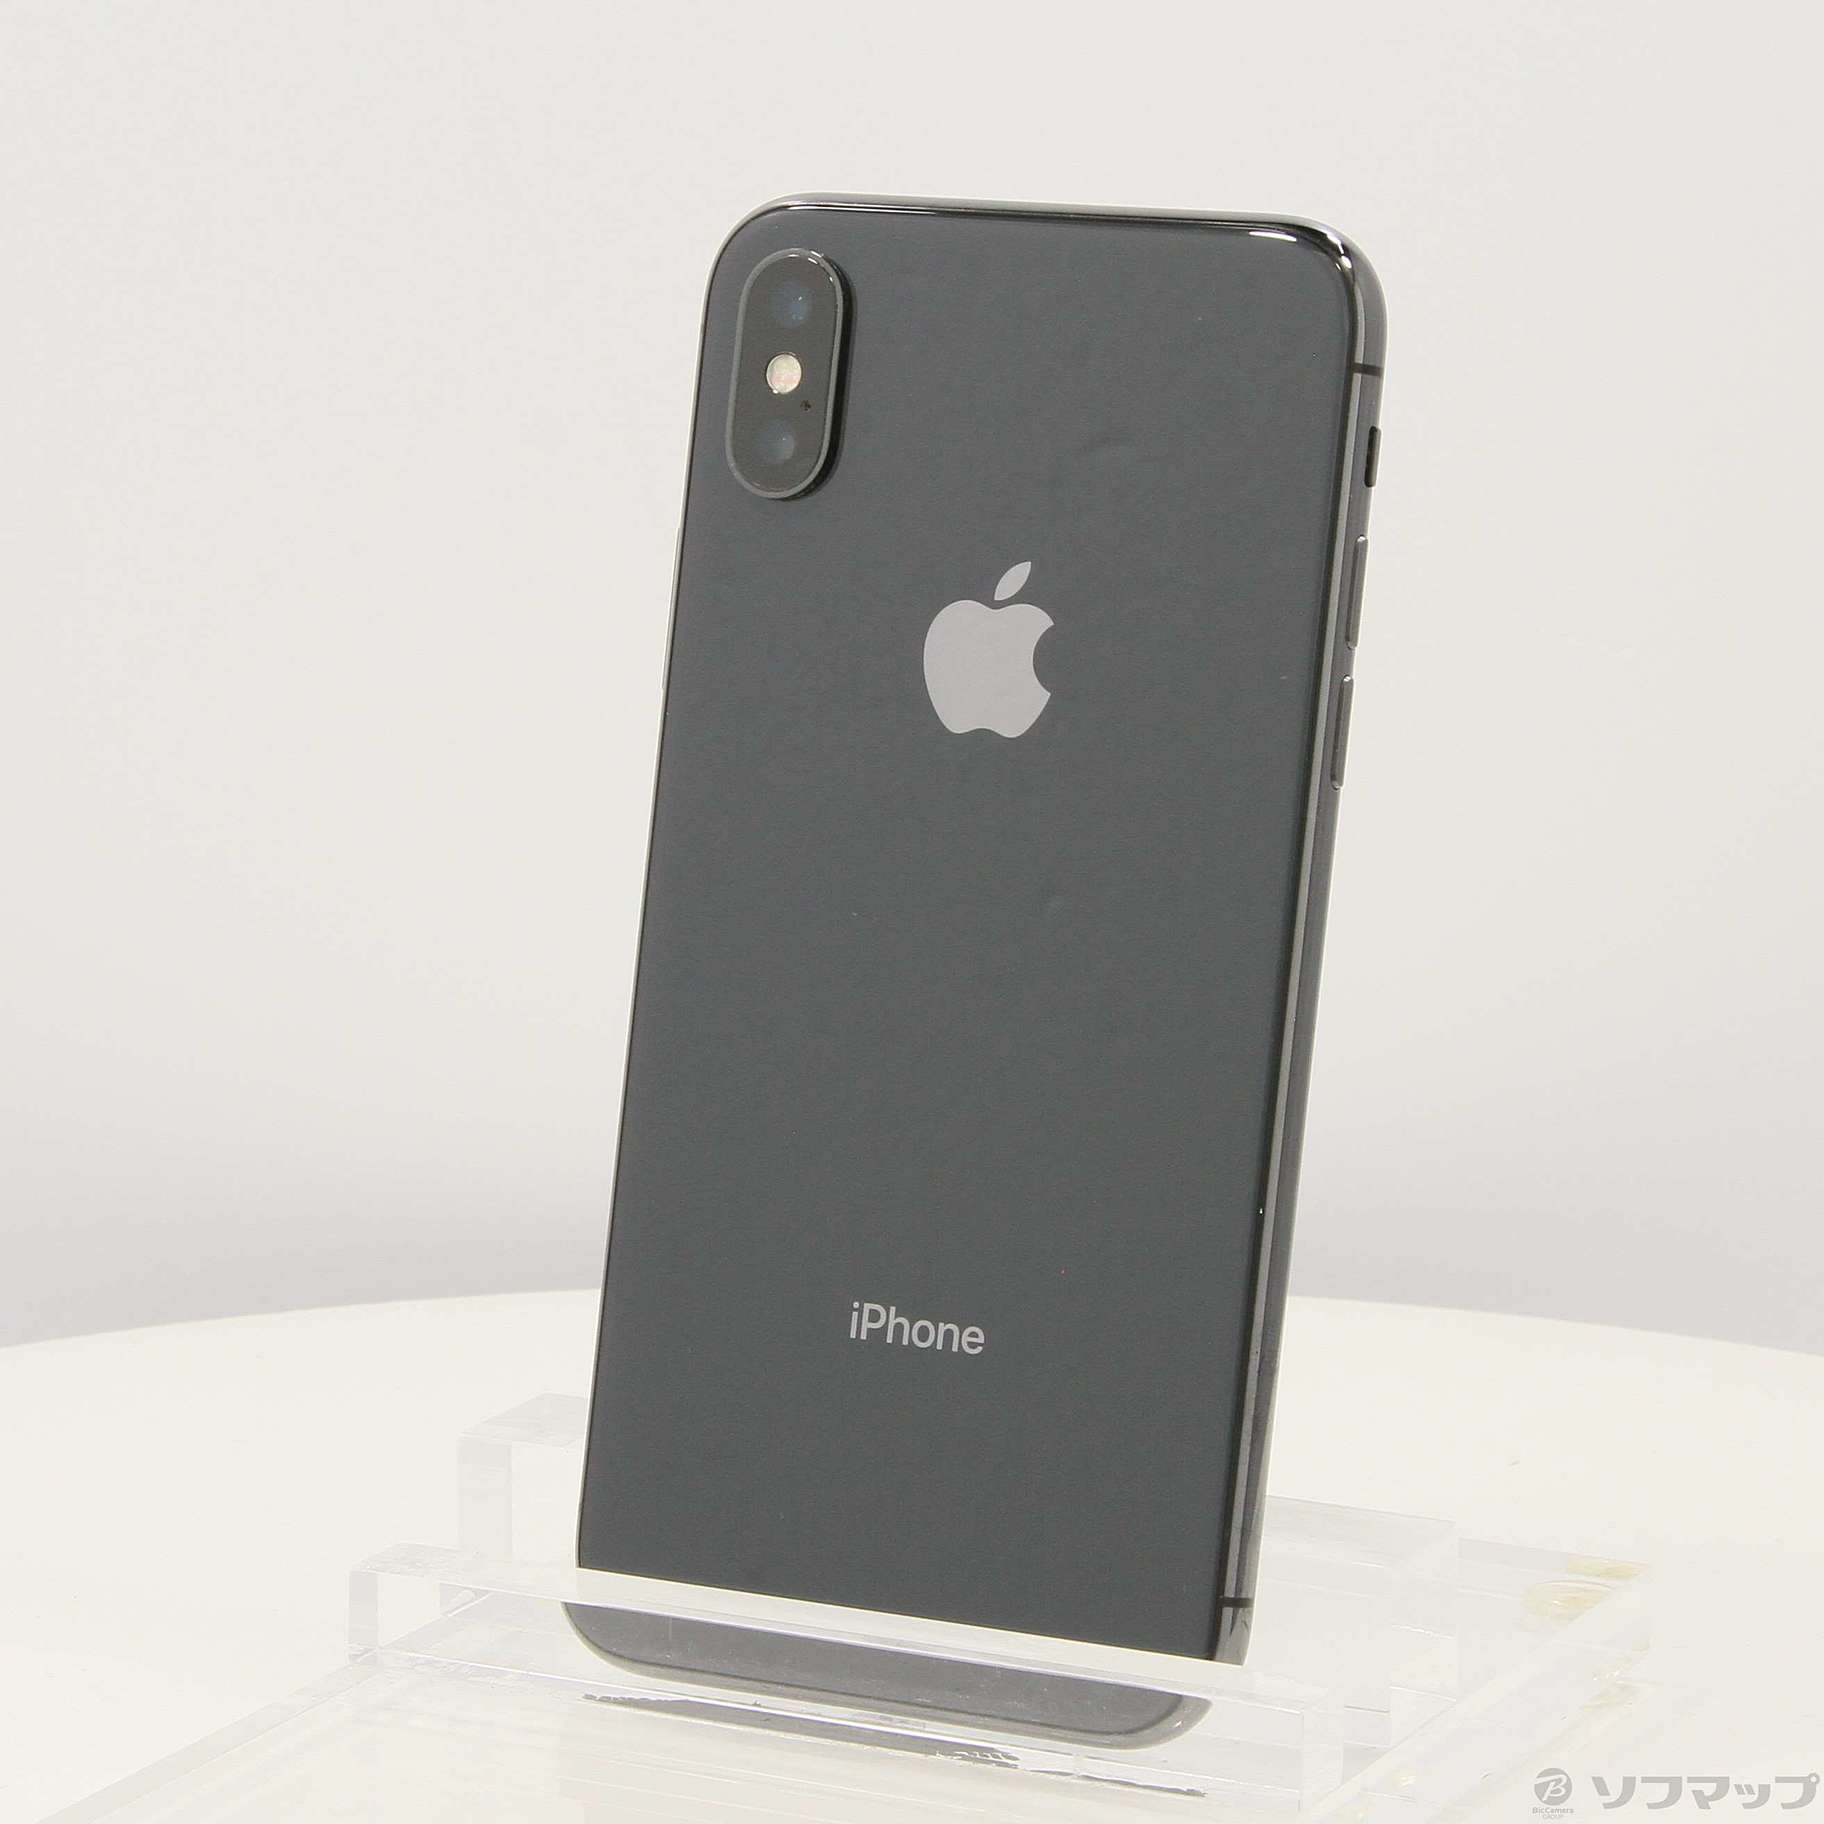 iPhone X  256GB SIMフリー スペースグレイスマートフォン/携帯電話